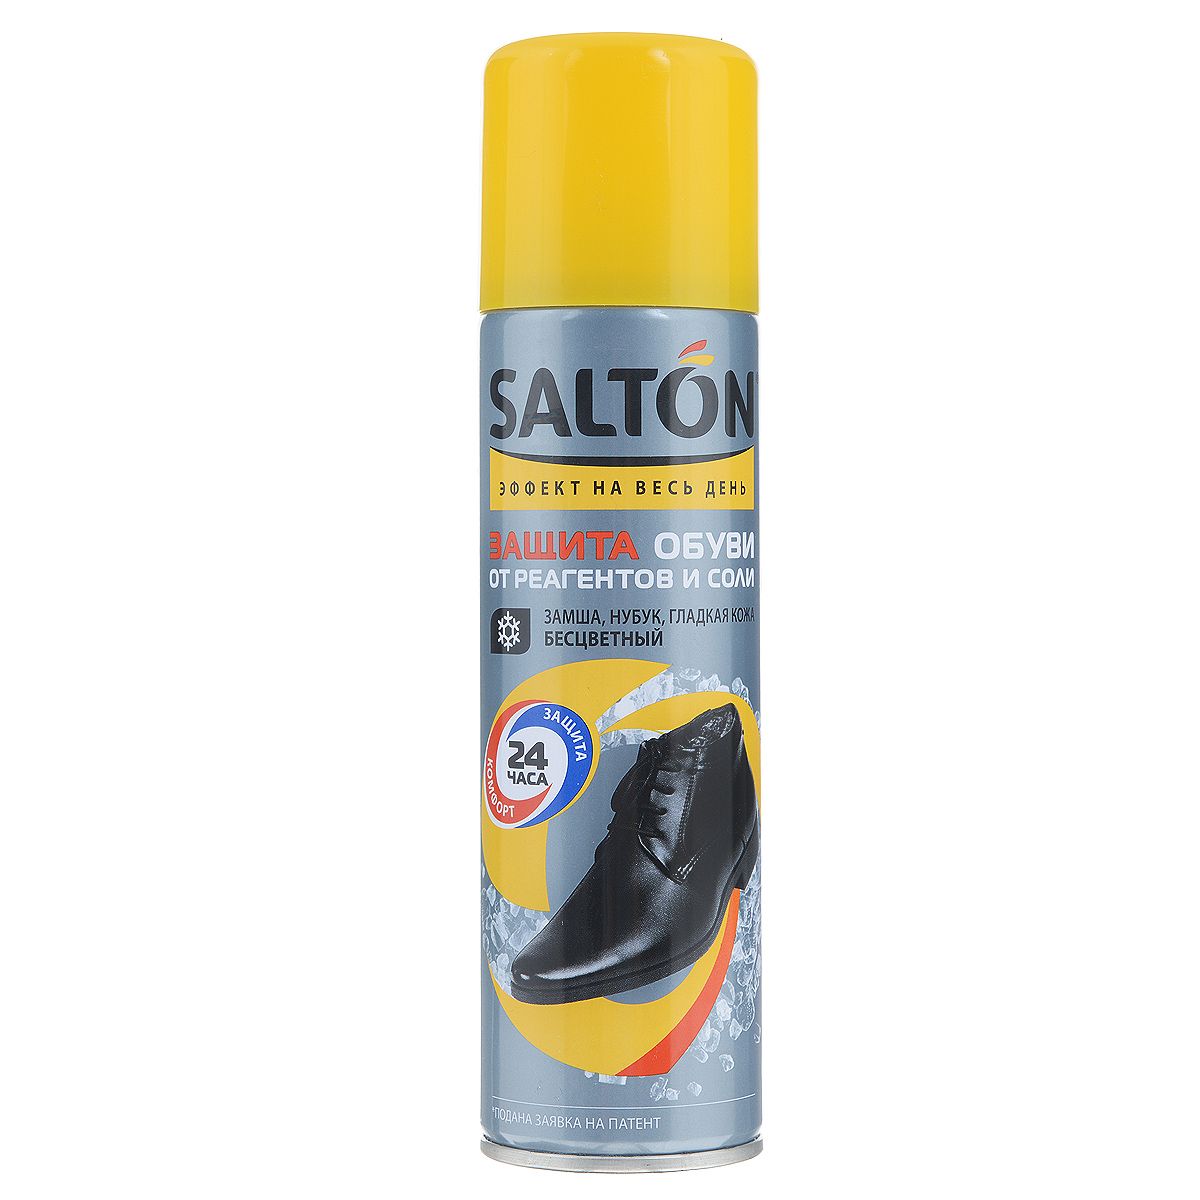 Защита обуви от реагентов и соли Salton бесцветный 250 мл